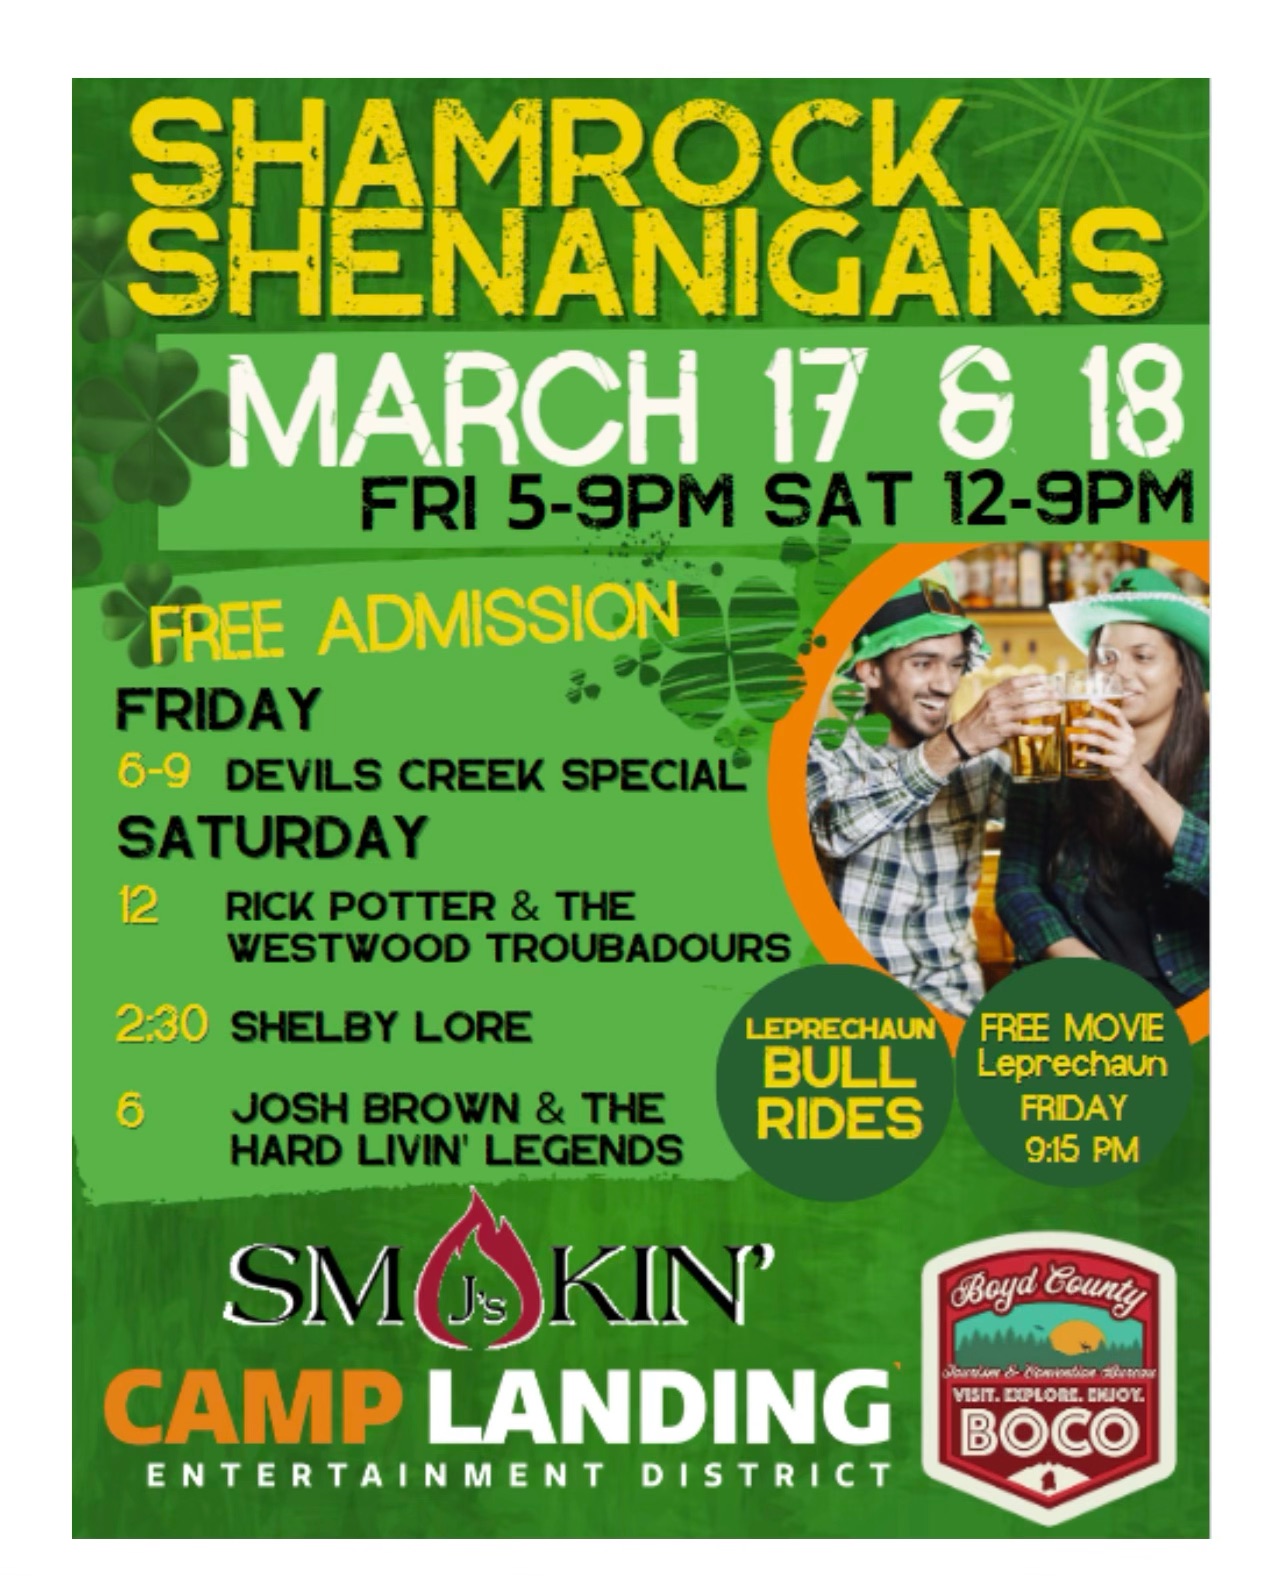 Shamrock Shenanigans at Camp Landing